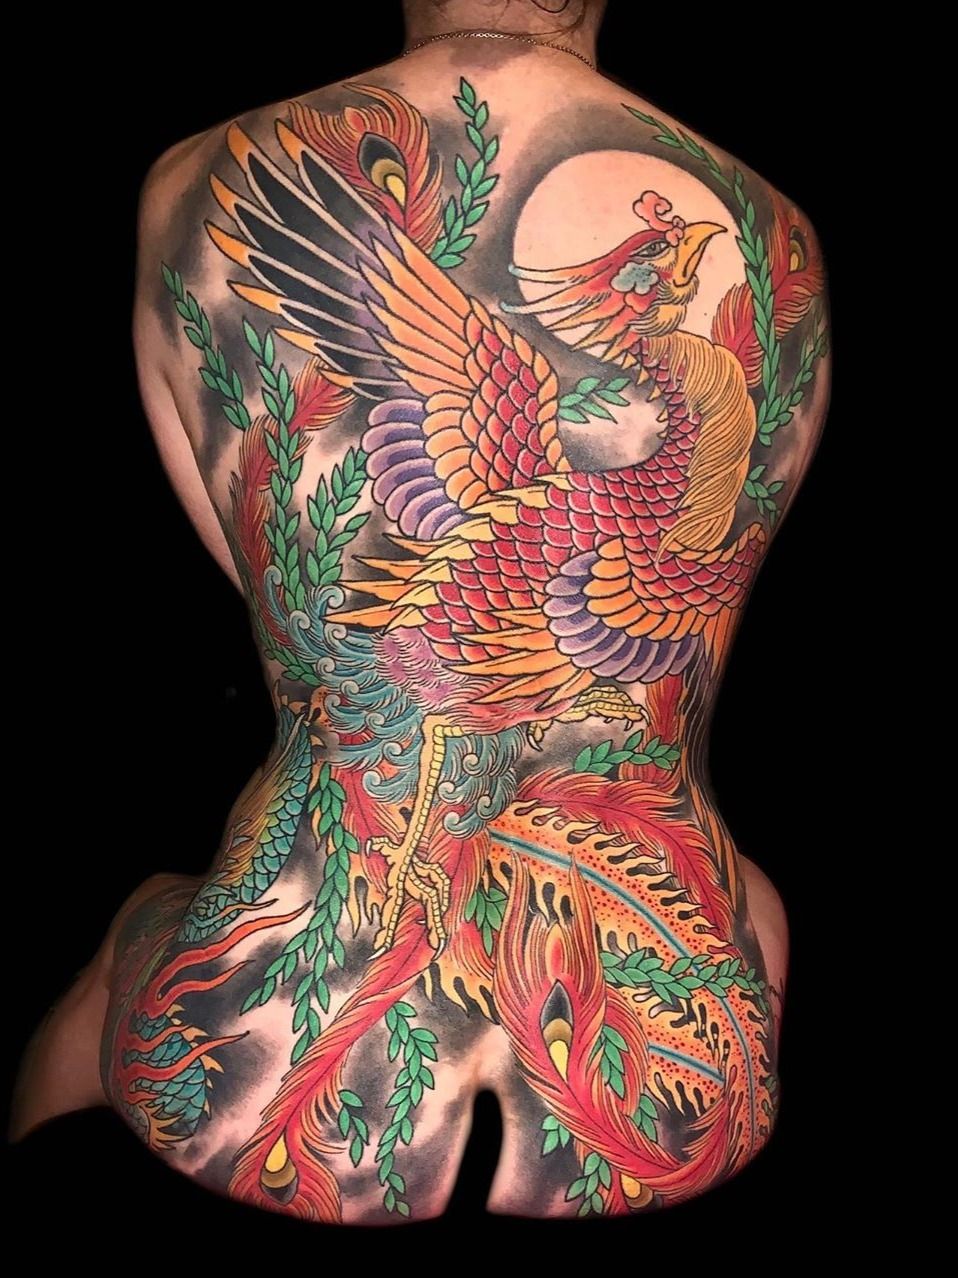 25 Beautiful Back Tattoo Ideas for Women in 2023